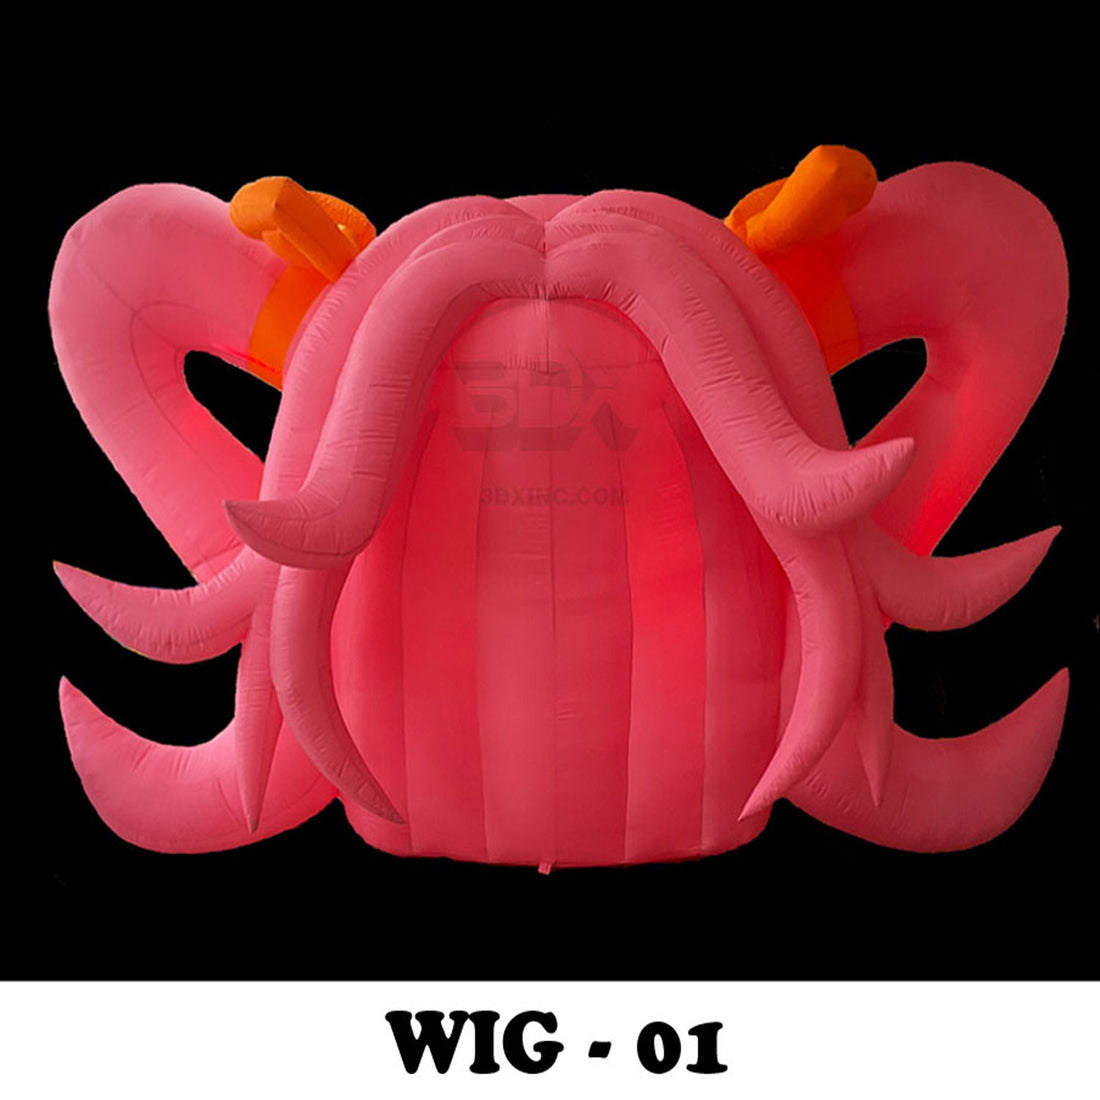 WIG - 01